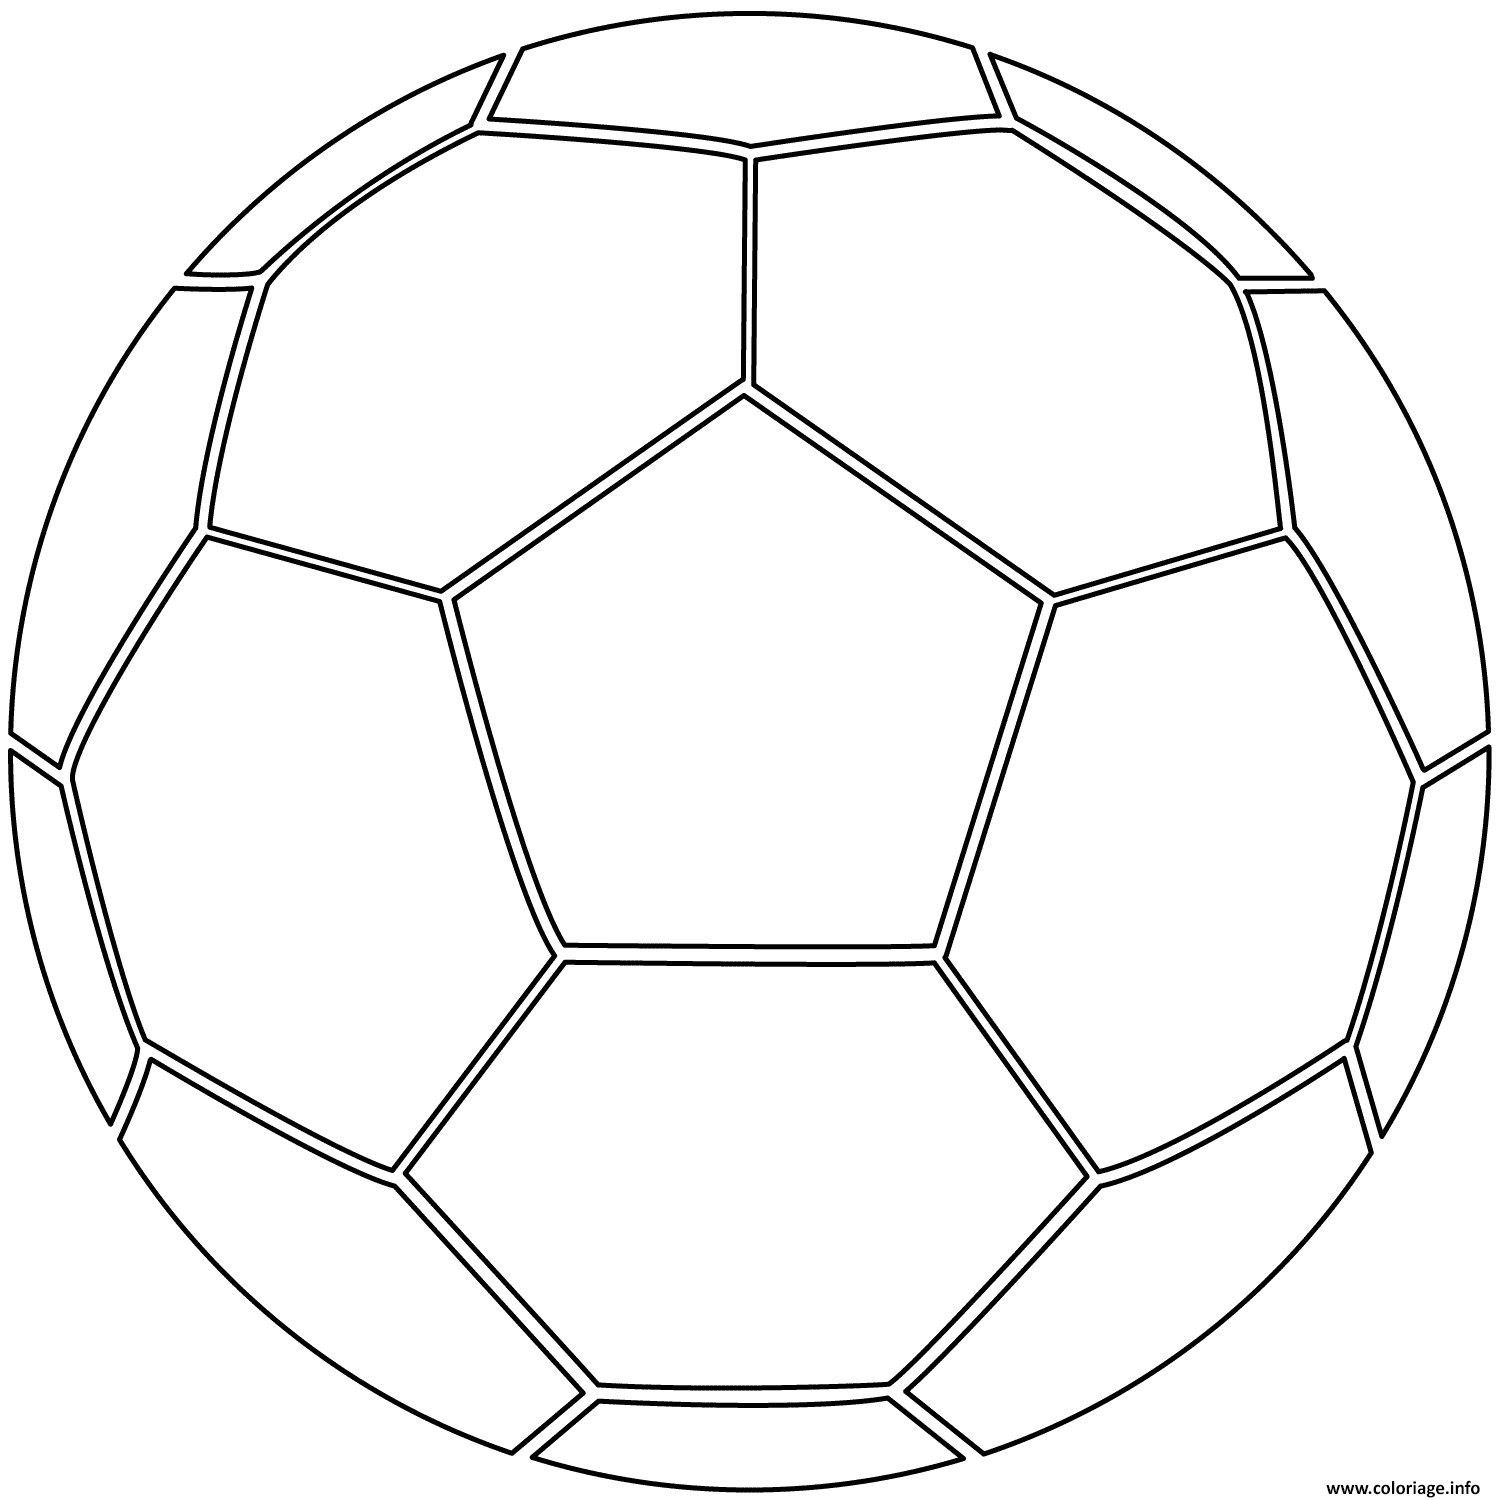 Coloriage À Imprimer De Foot Meilleur De Coloriage Ballon De Foot soccer Jecolorie